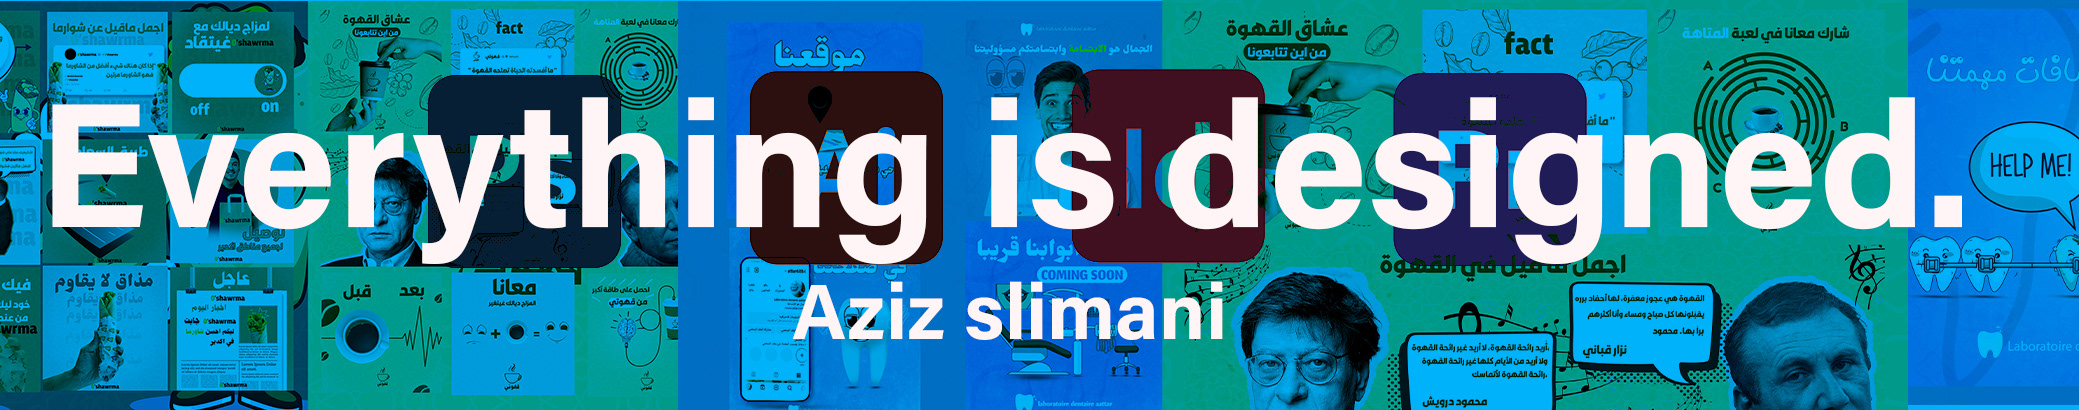 Profil-Banner von Aziz slimani